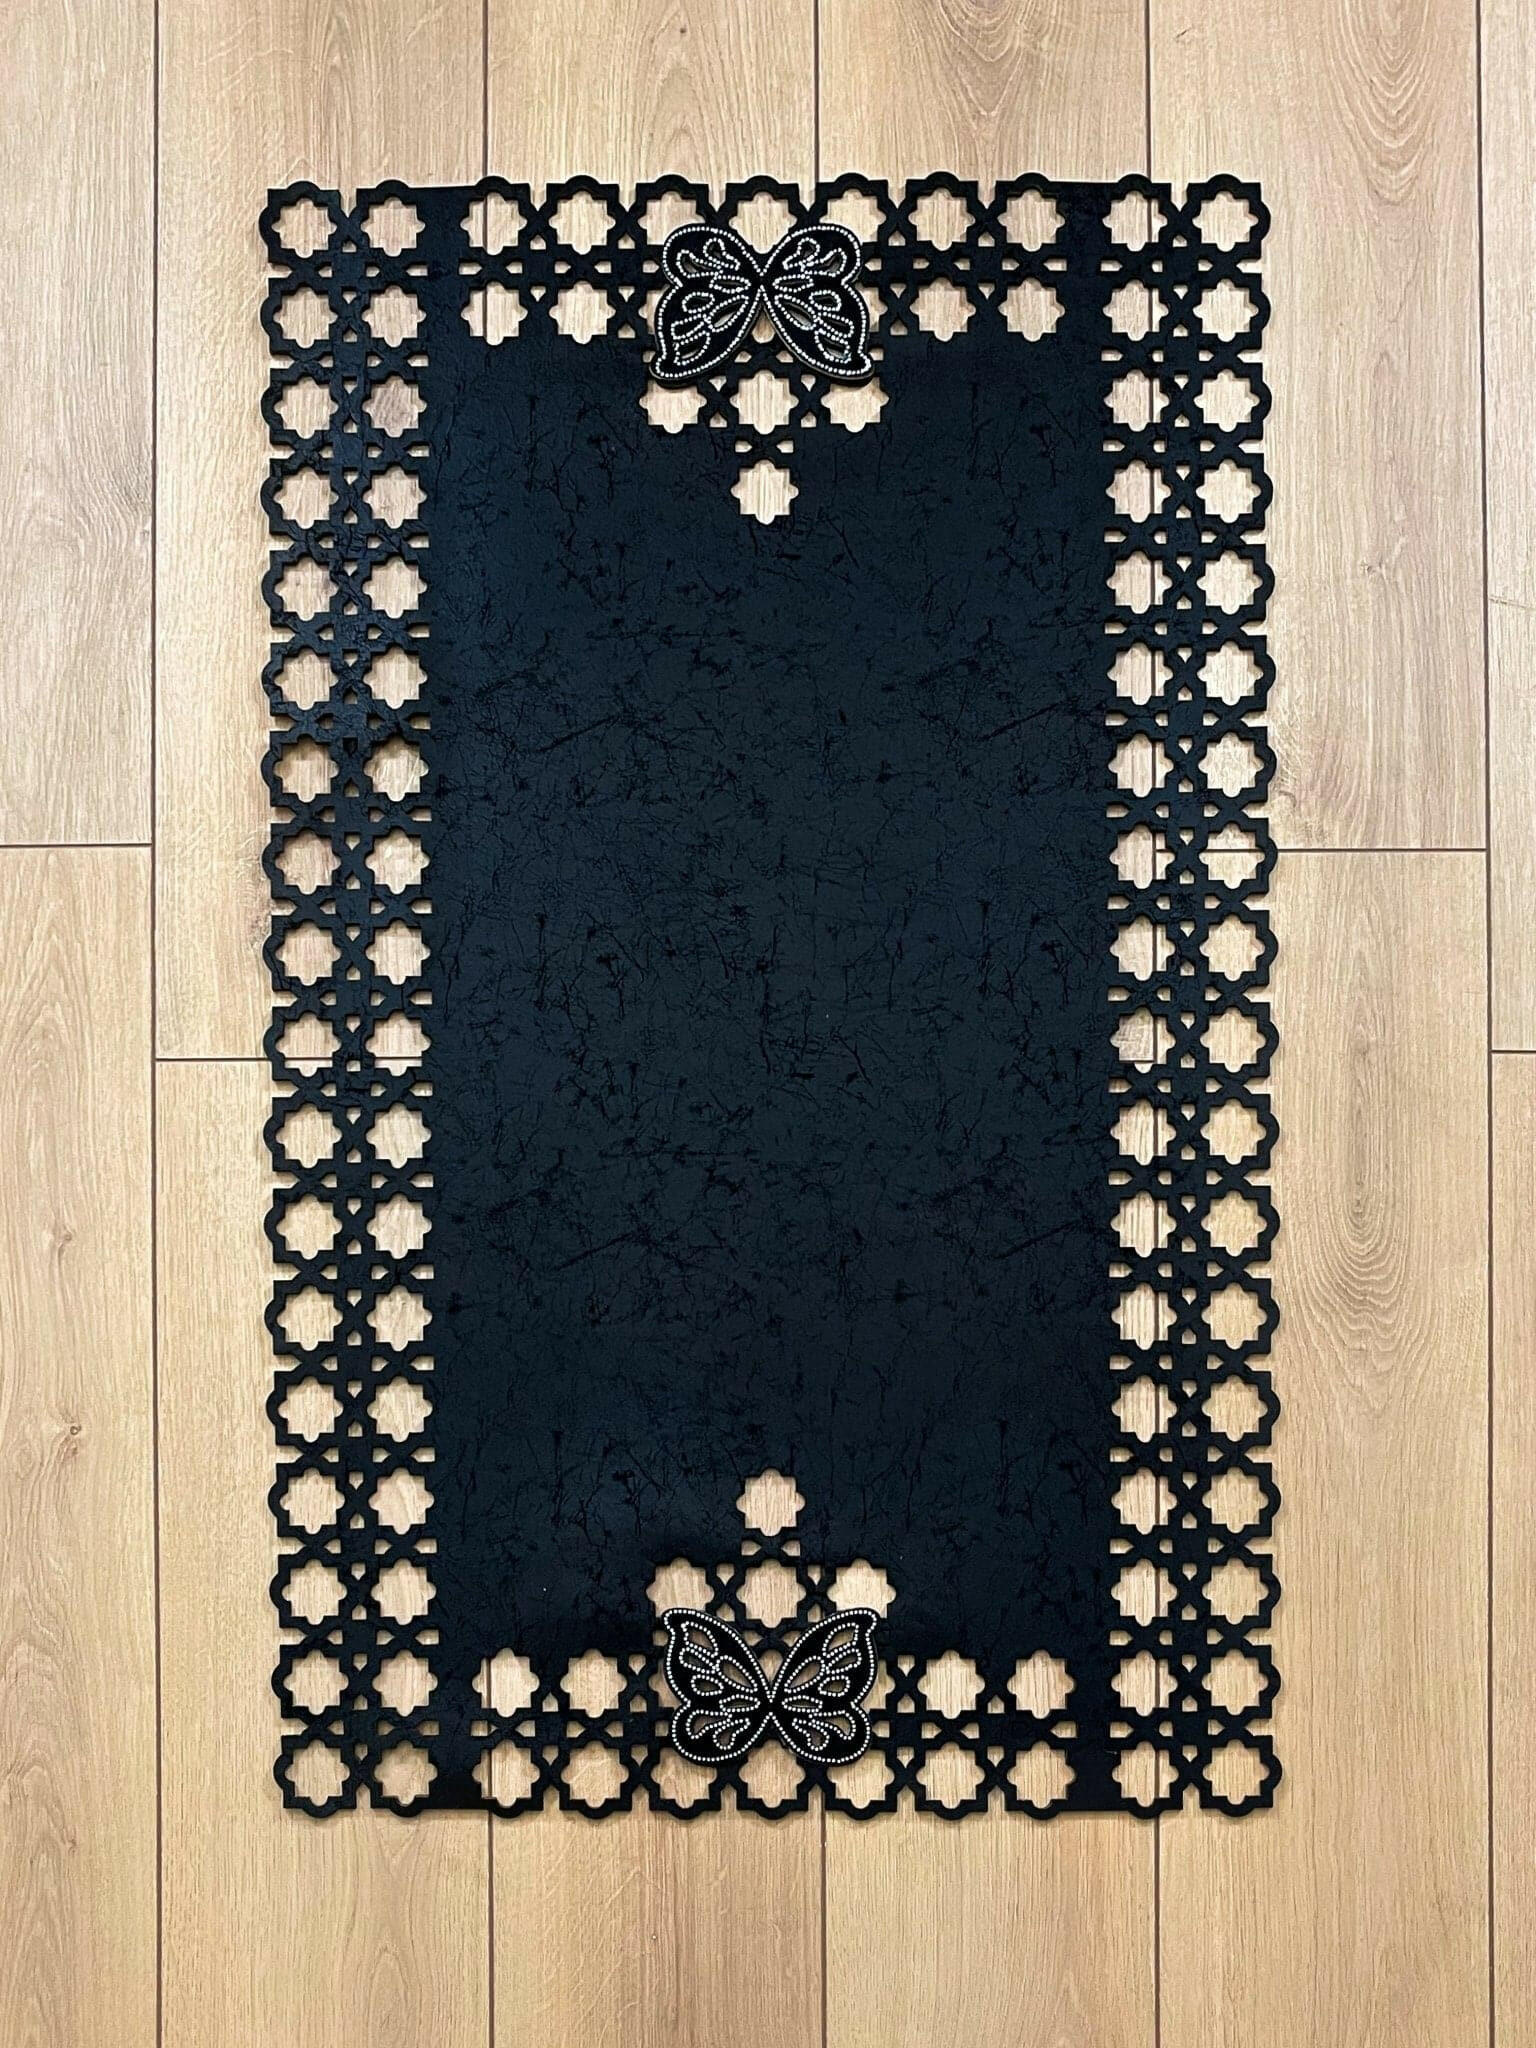 Kelebek Black Rug - Creative Home Designs, Butterfly Turkish Carpet, Non Slip Washable Velvet Mat